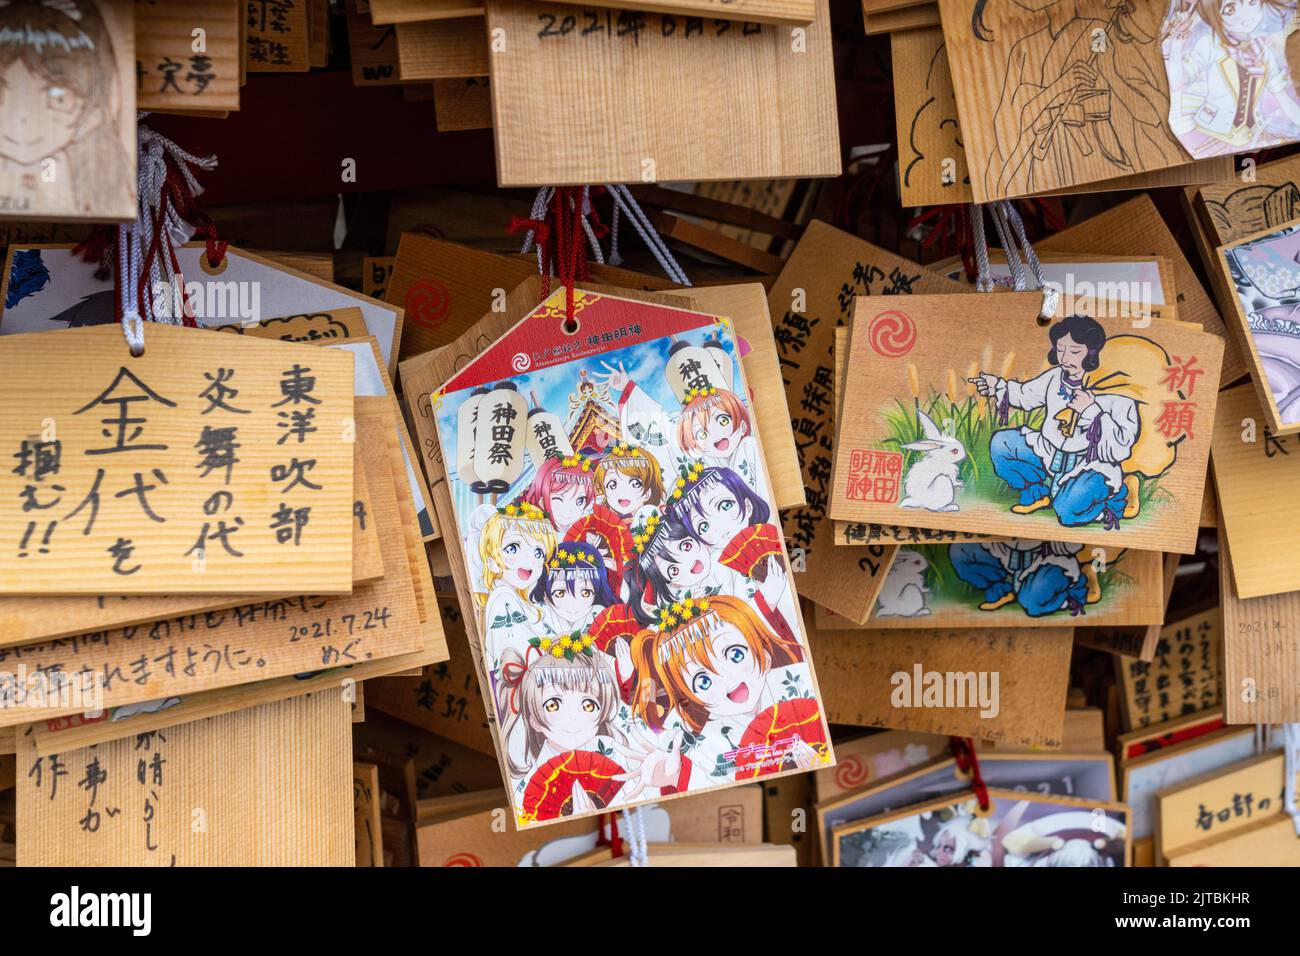 Personaggi giapponesi di anime e manga dipinti su placche di preghiera ema presso il Santuario di Kanda Myojin, un santuario Shintoista dedicato agli affari e ai technofili a Chiyoda, Tokyo, Giappone. Gli adoratori appendono le placche con i loro desideri, sogni o preghiere al tempio. Foto Stock